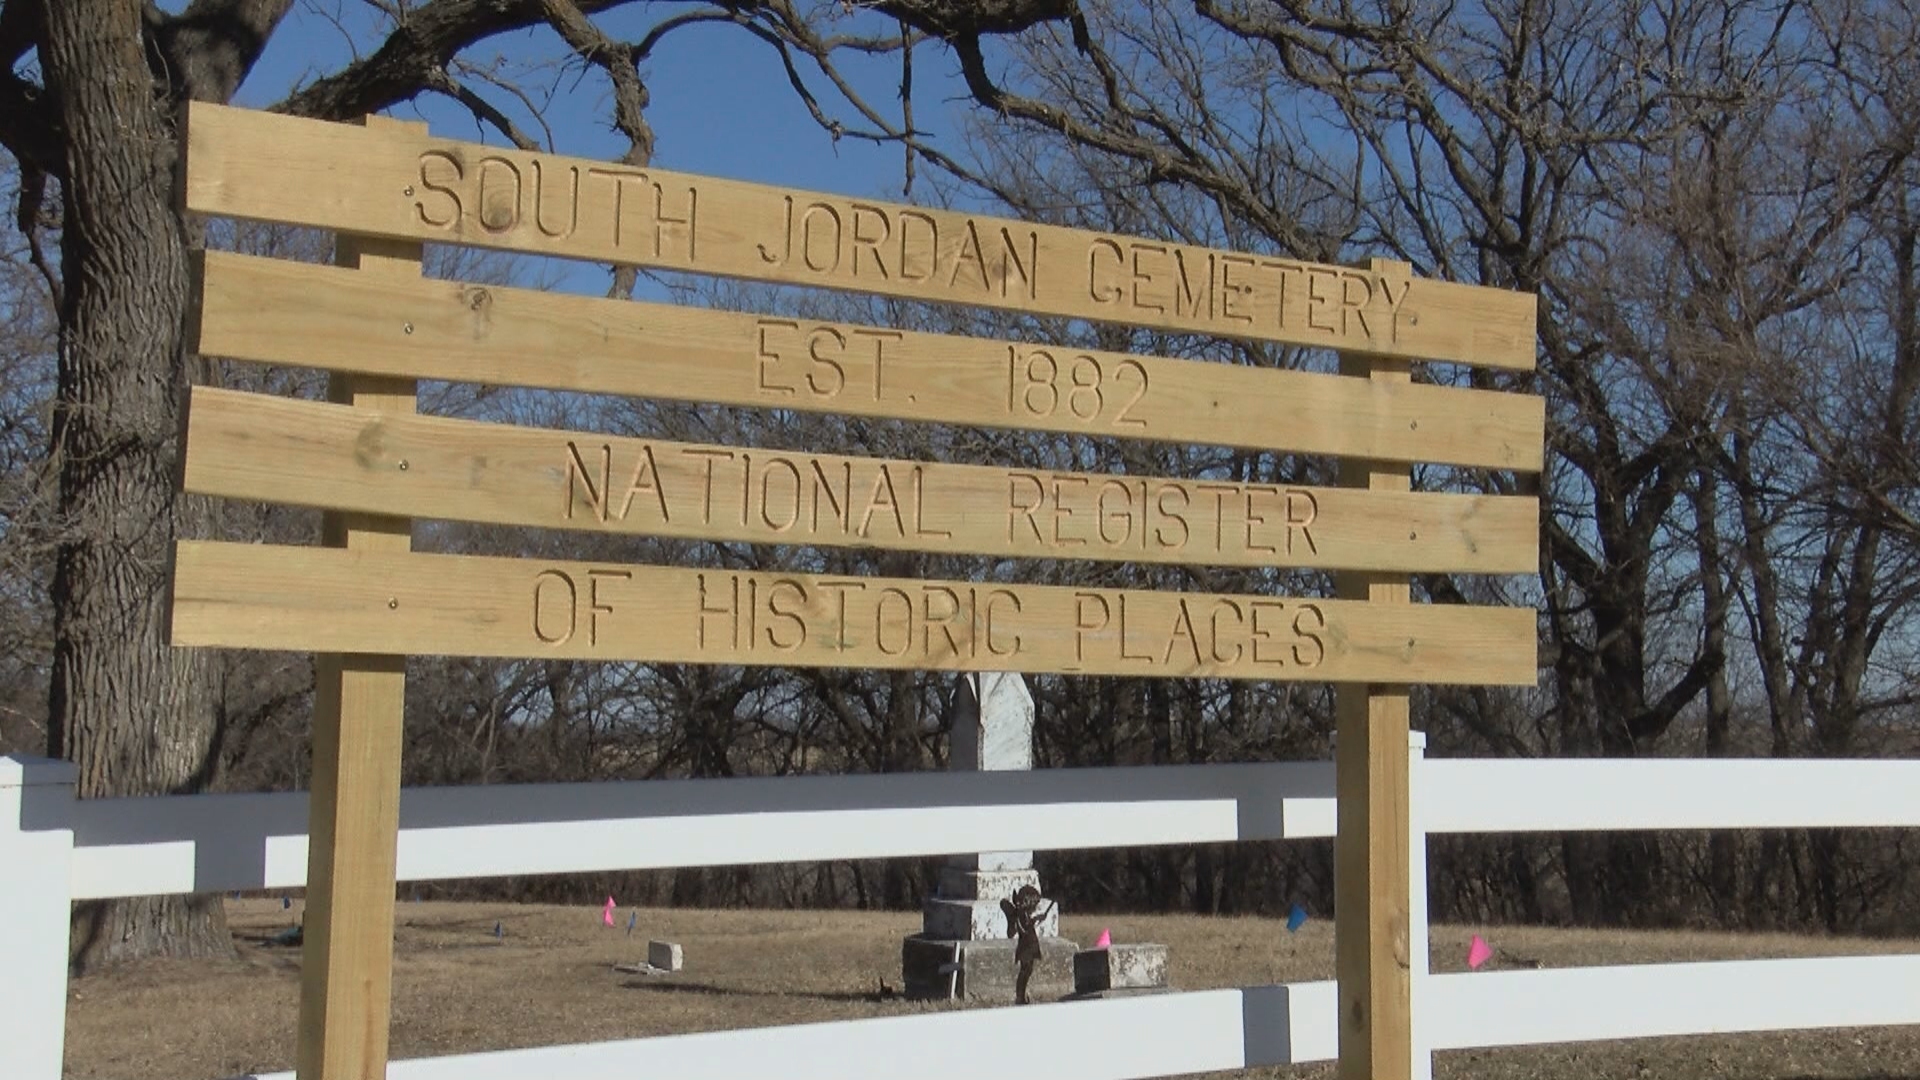 Cementerio histórico tiene sus raíces en algunos de los primeros colonos negros de Iowa.